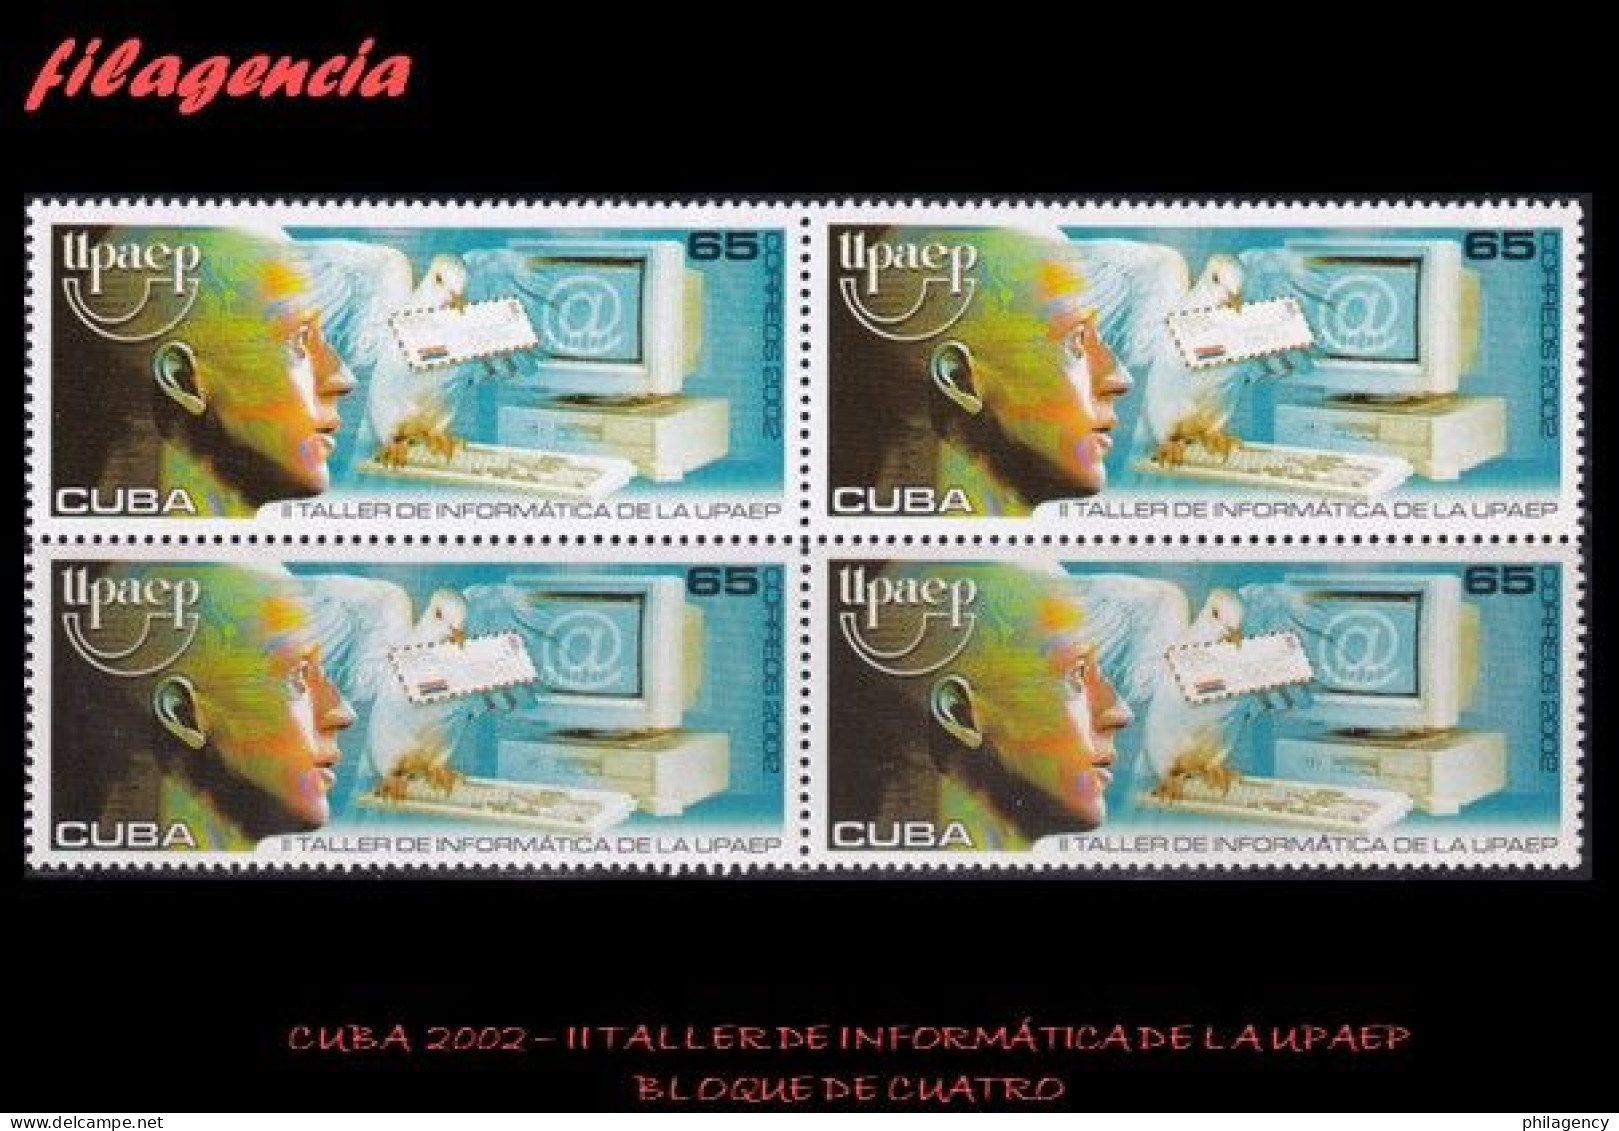 CUBA. BLOQUES DE CUATRO. 2002-03 II TALLER DE INFORMÁTICA DE LA UPAEP - Ongebruikt